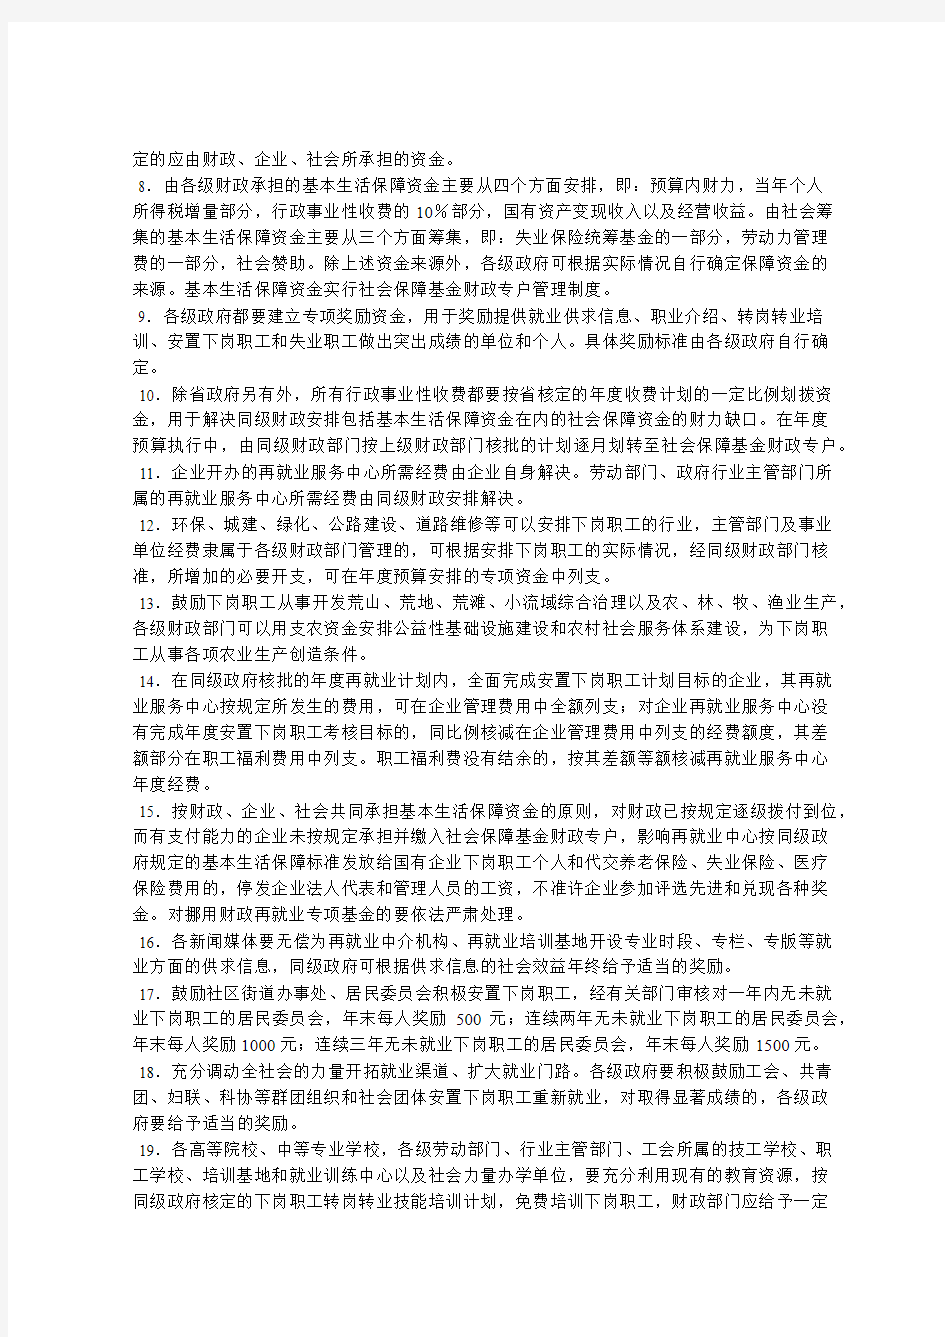 辽宁省人民政府关于安置国有企业下岗职工有关政策的通知